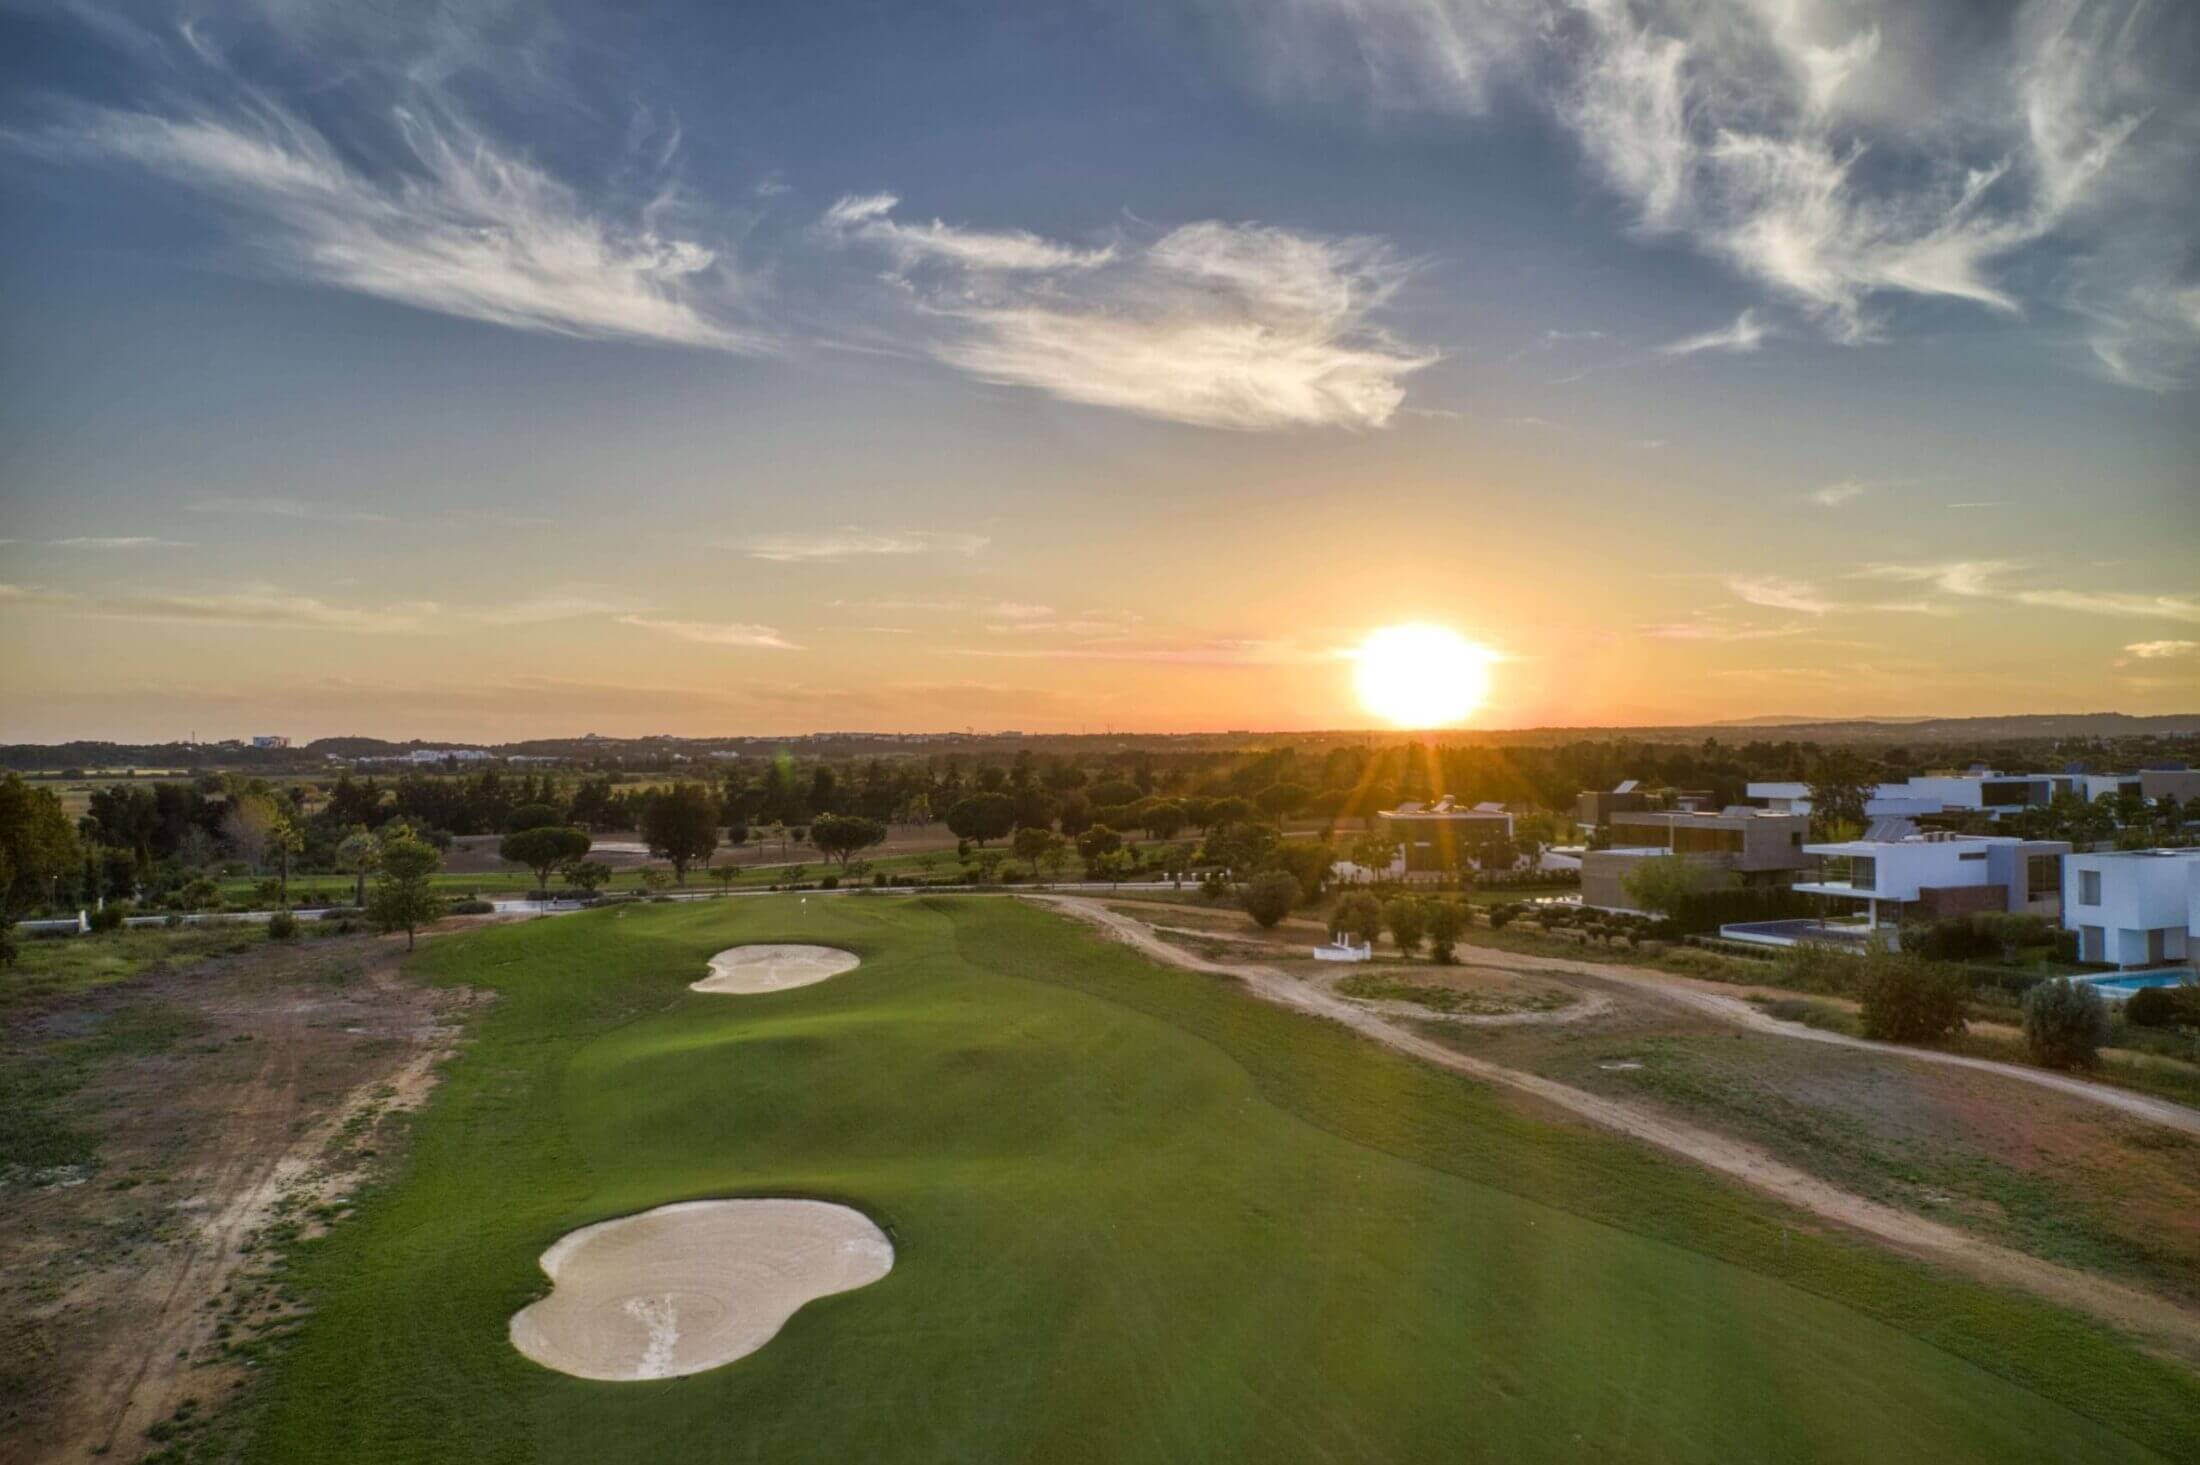 Dom Pedro Laguna Golf Course fairway aerial view